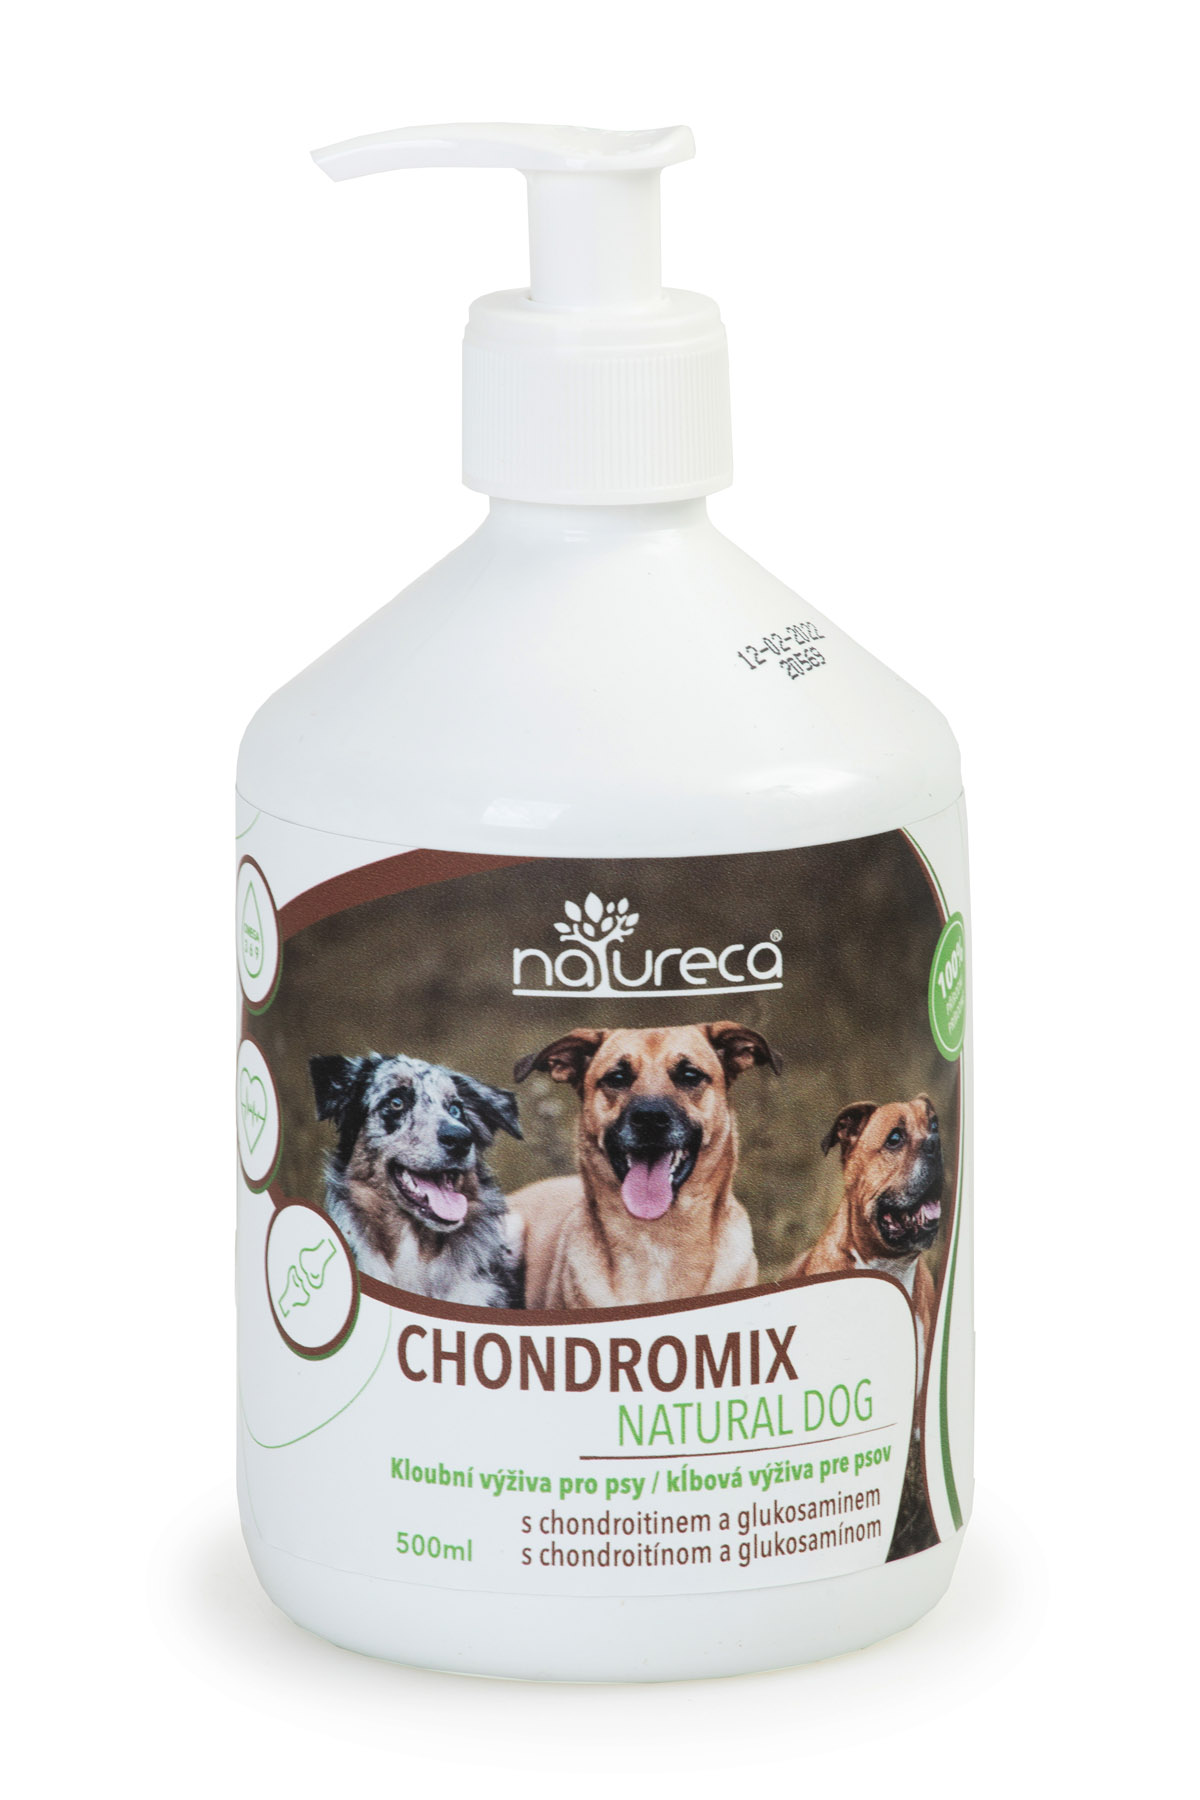 Chondromix Natural Dog 500ml, kloubní výživa